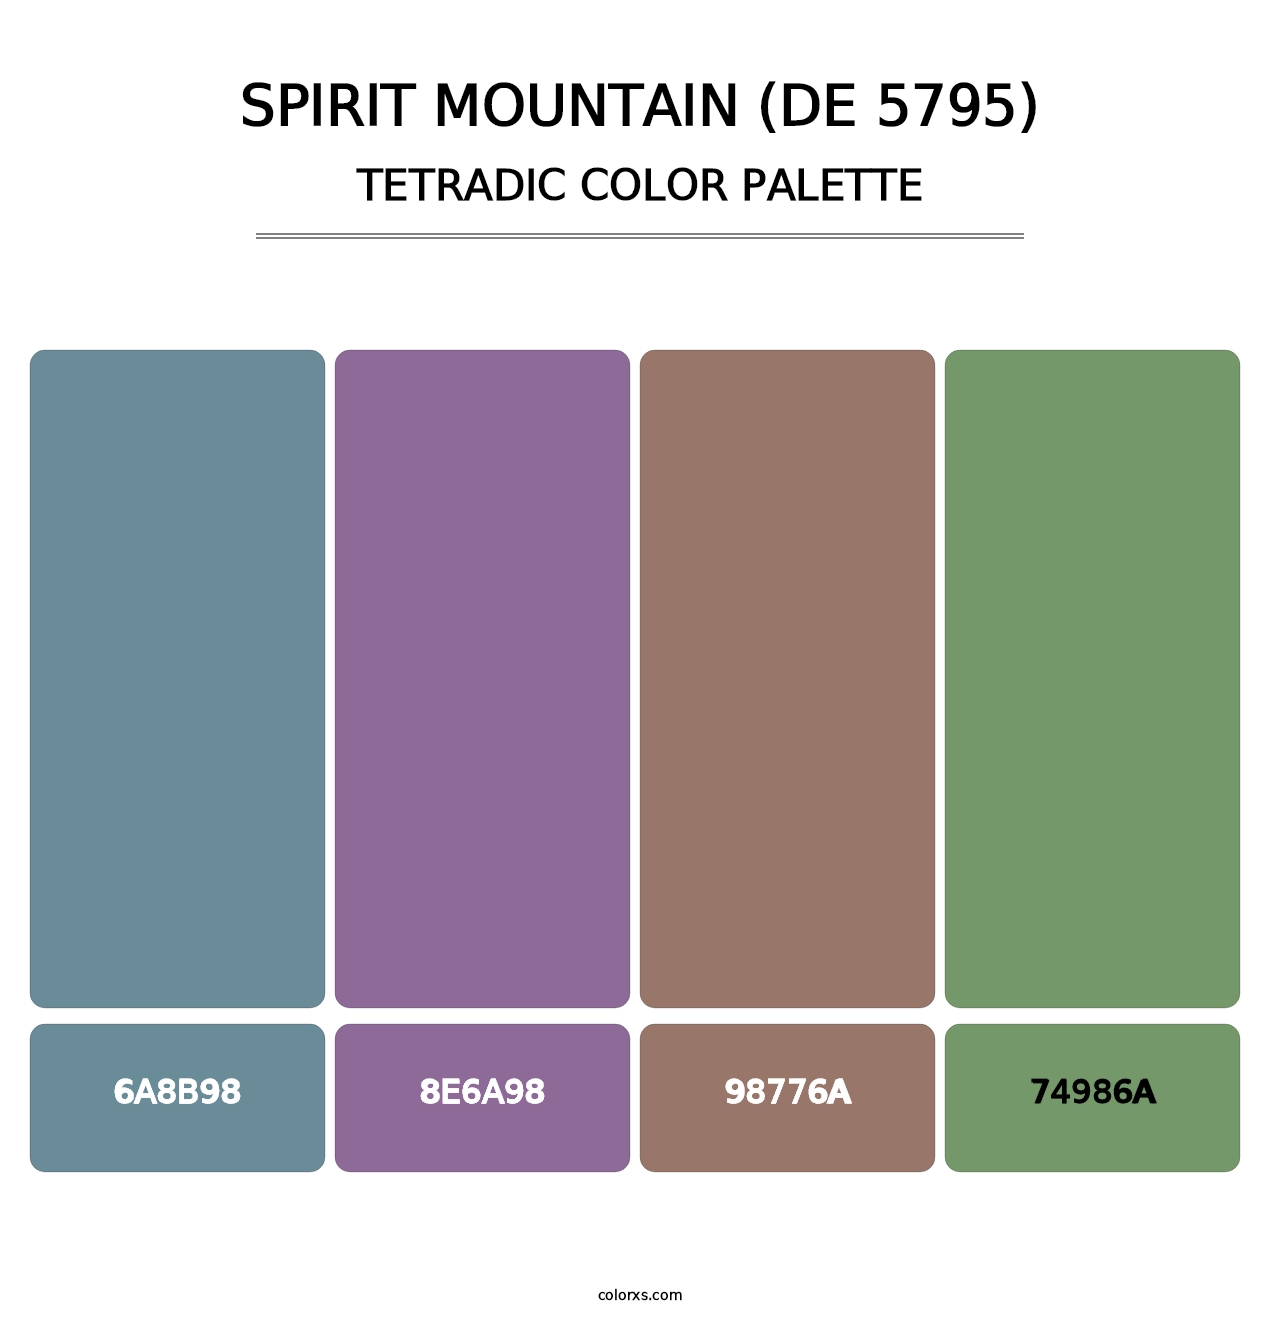 Spirit Mountain (DE 5795) - Tetradic Color Palette